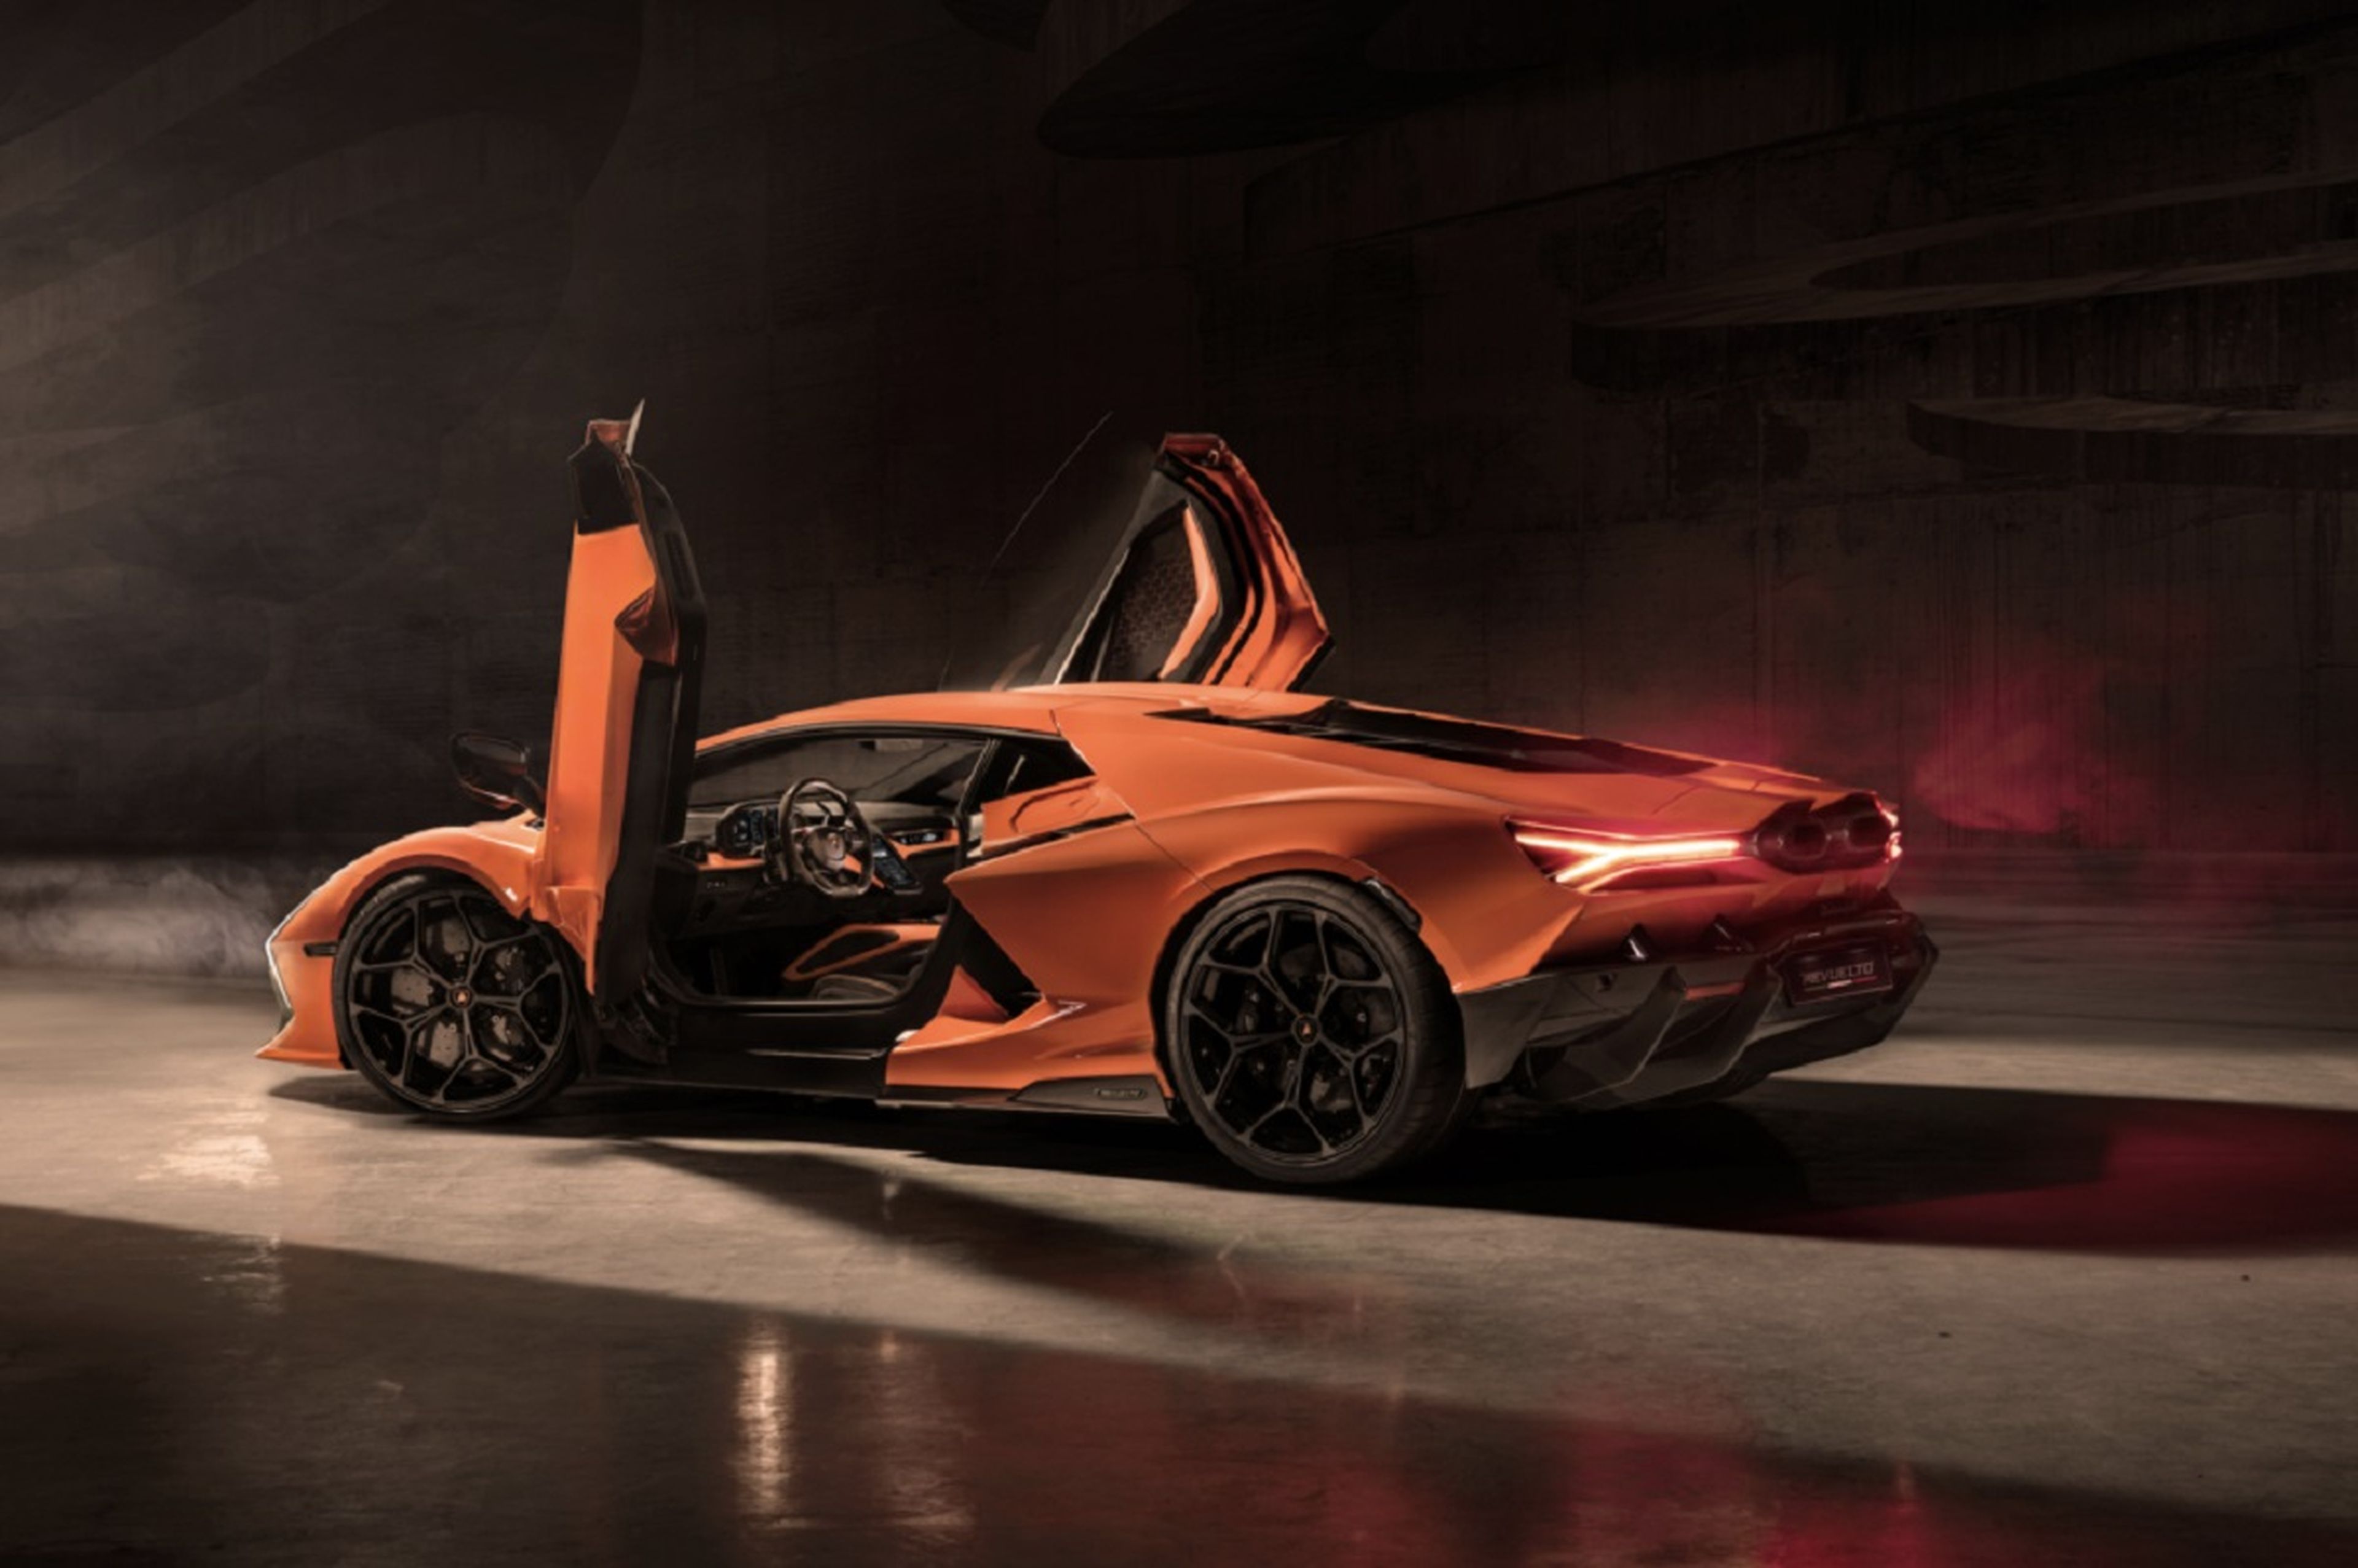 Nuevo modelo de la gama alta de Automobili Lamborghini: Revuelto, que es la denominación de tipo del modelo de 2 puertas, significa en español "confuso, cambiante" e indica la mezcla de motor de combustión y propulsión eléctrica.